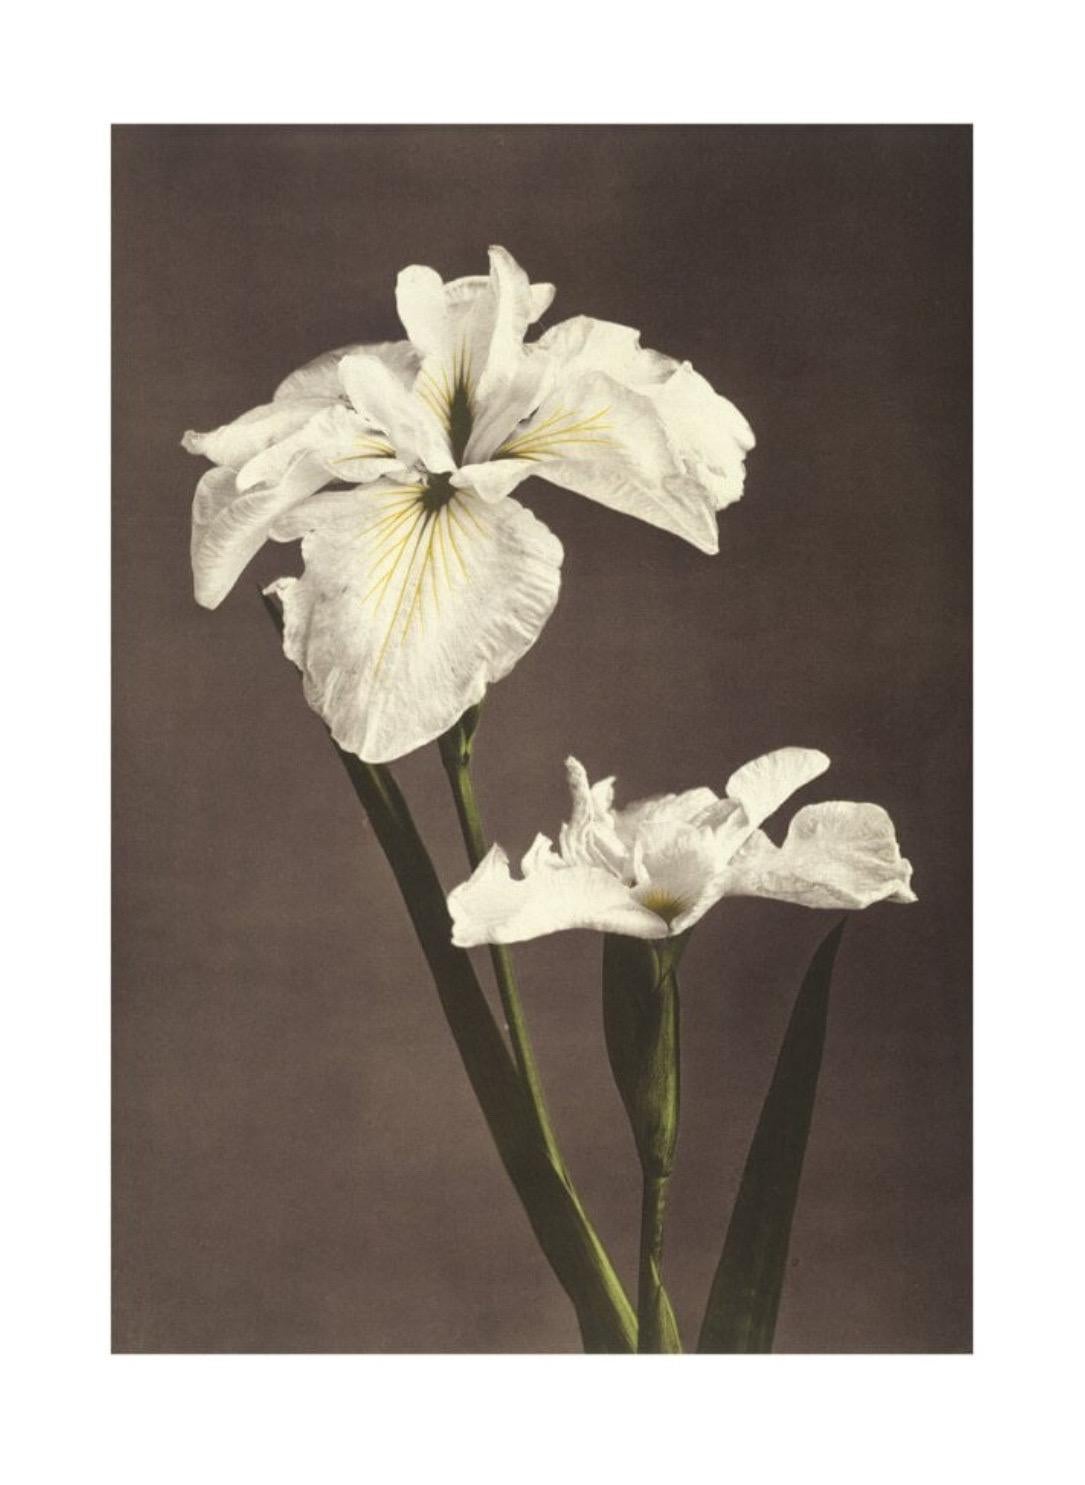 Ogawa Kazumasa, Iris Kæmpferi, aus Einige japanische Blumen

Gicléedruck auf mattem 250 g/m²-Konservierungspapier, hergestellt in Deutschland aus säure- und chlorfreiem Zellstoff 

Papierformat: 100 x 76 cm
Bildgröße: 80 x 56 cm 

Dieser Druck wird